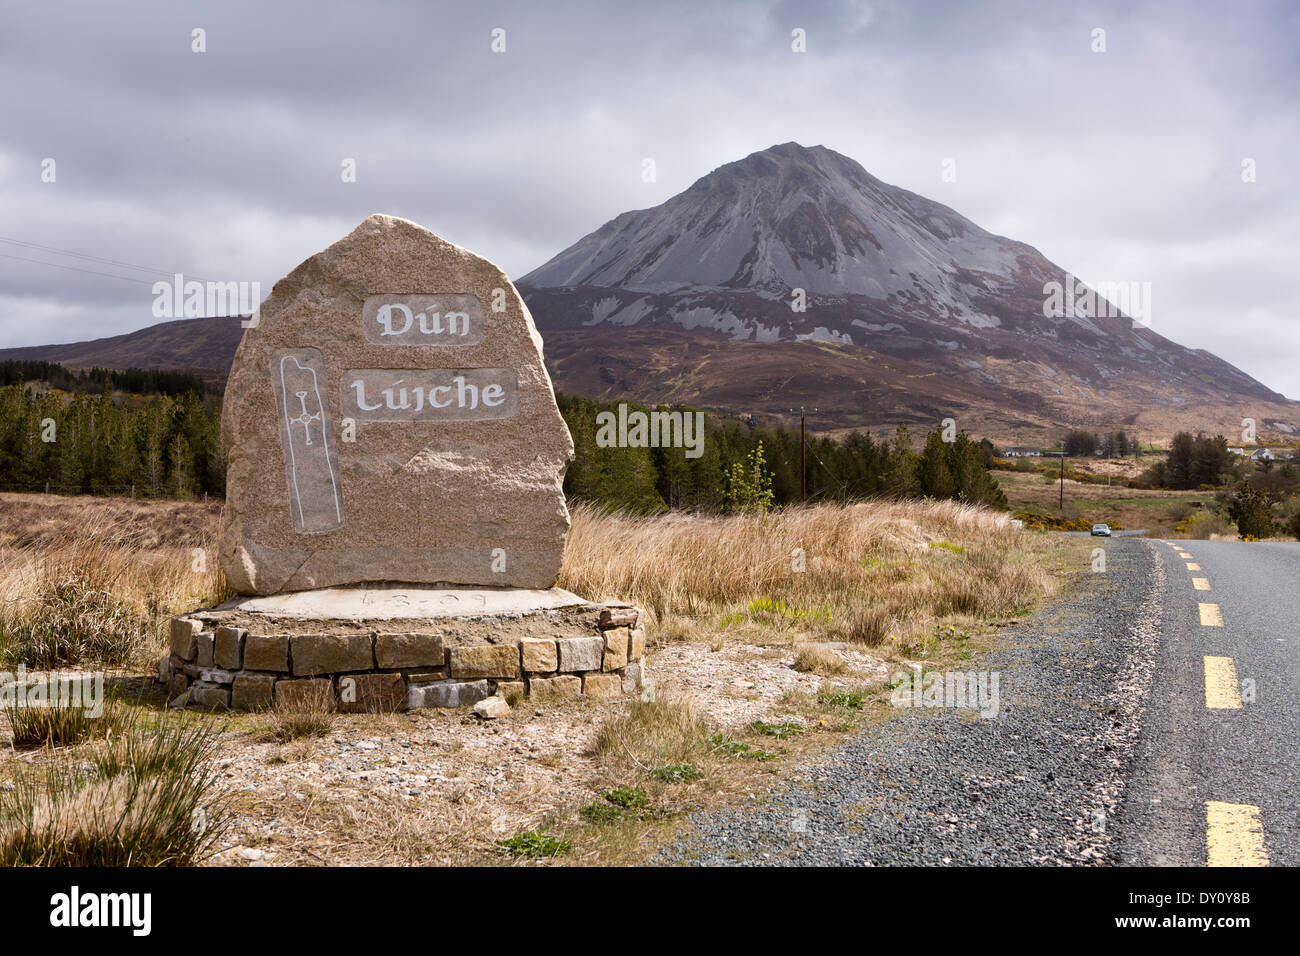 Irland, Co. Donegal, Dunlewey, Mount Errigal, Irland zweithöchste Berg, Dun Luiche irische Sprache Zeichen Stockfoto